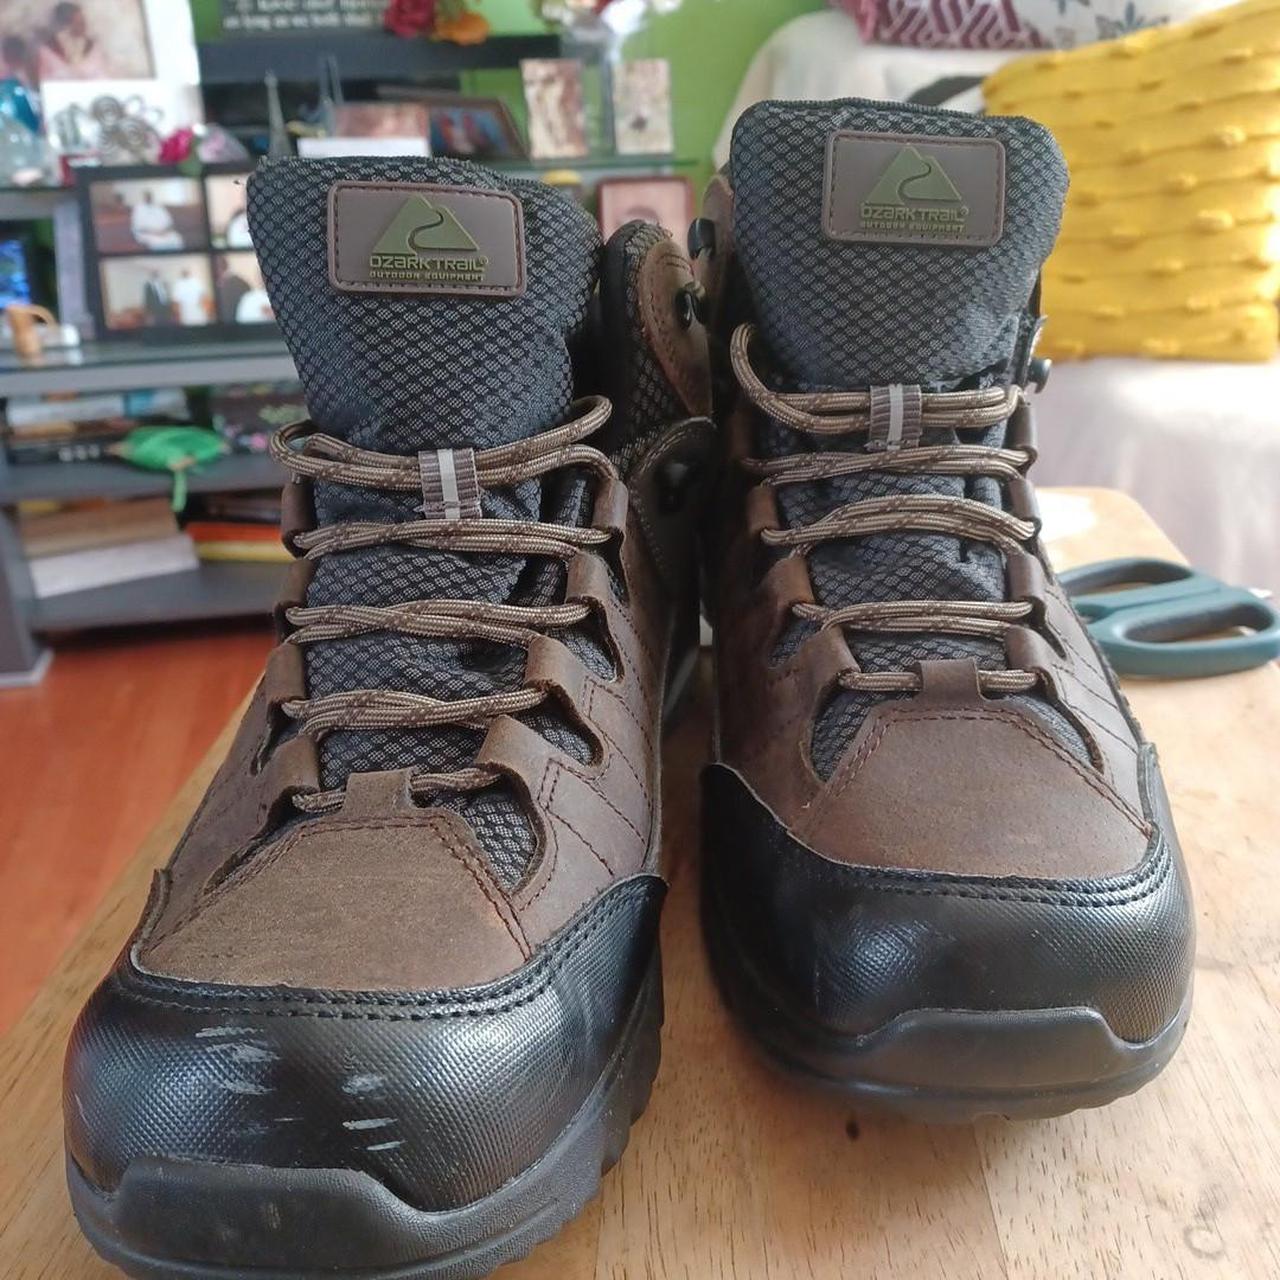 Ozark Trail Hiking Boots Men’s Sz 12 Waterproof... - Depop